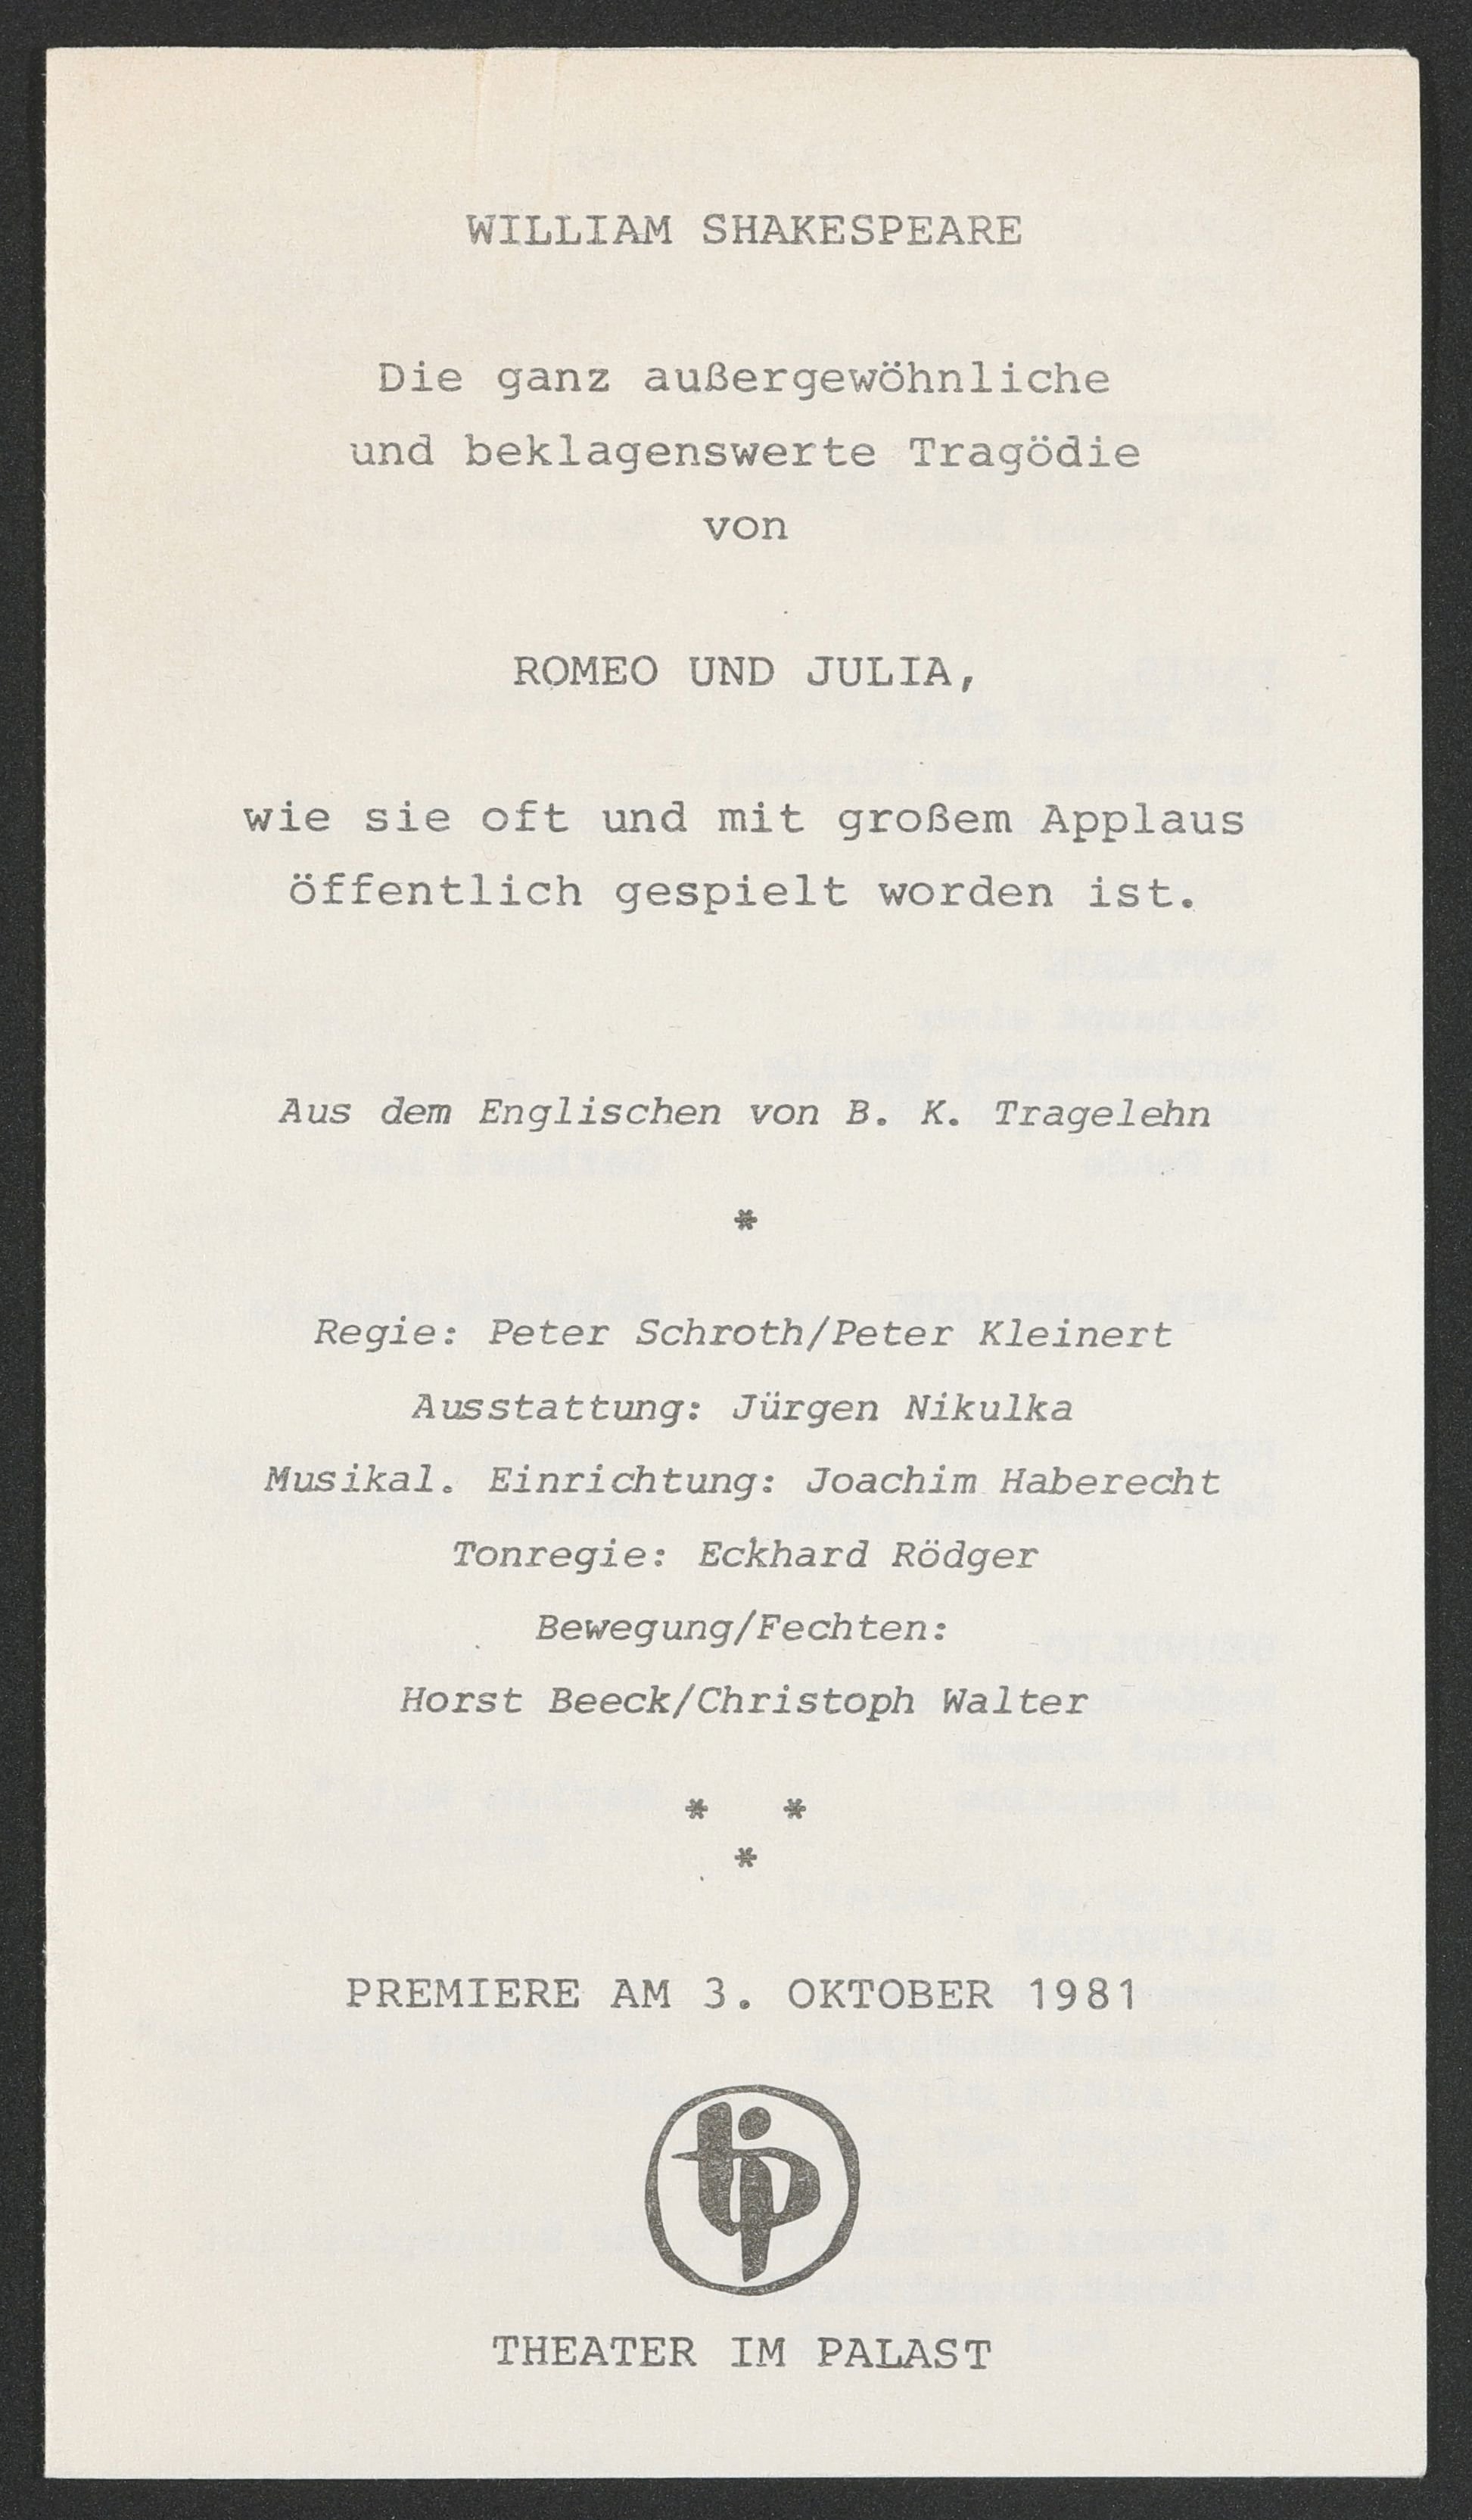 Programmheft zu "Romeo und Julia" am Theater im Palast 1981 (Hochschule für Schauspielkunst Ernst Busch Berlin RR-F)